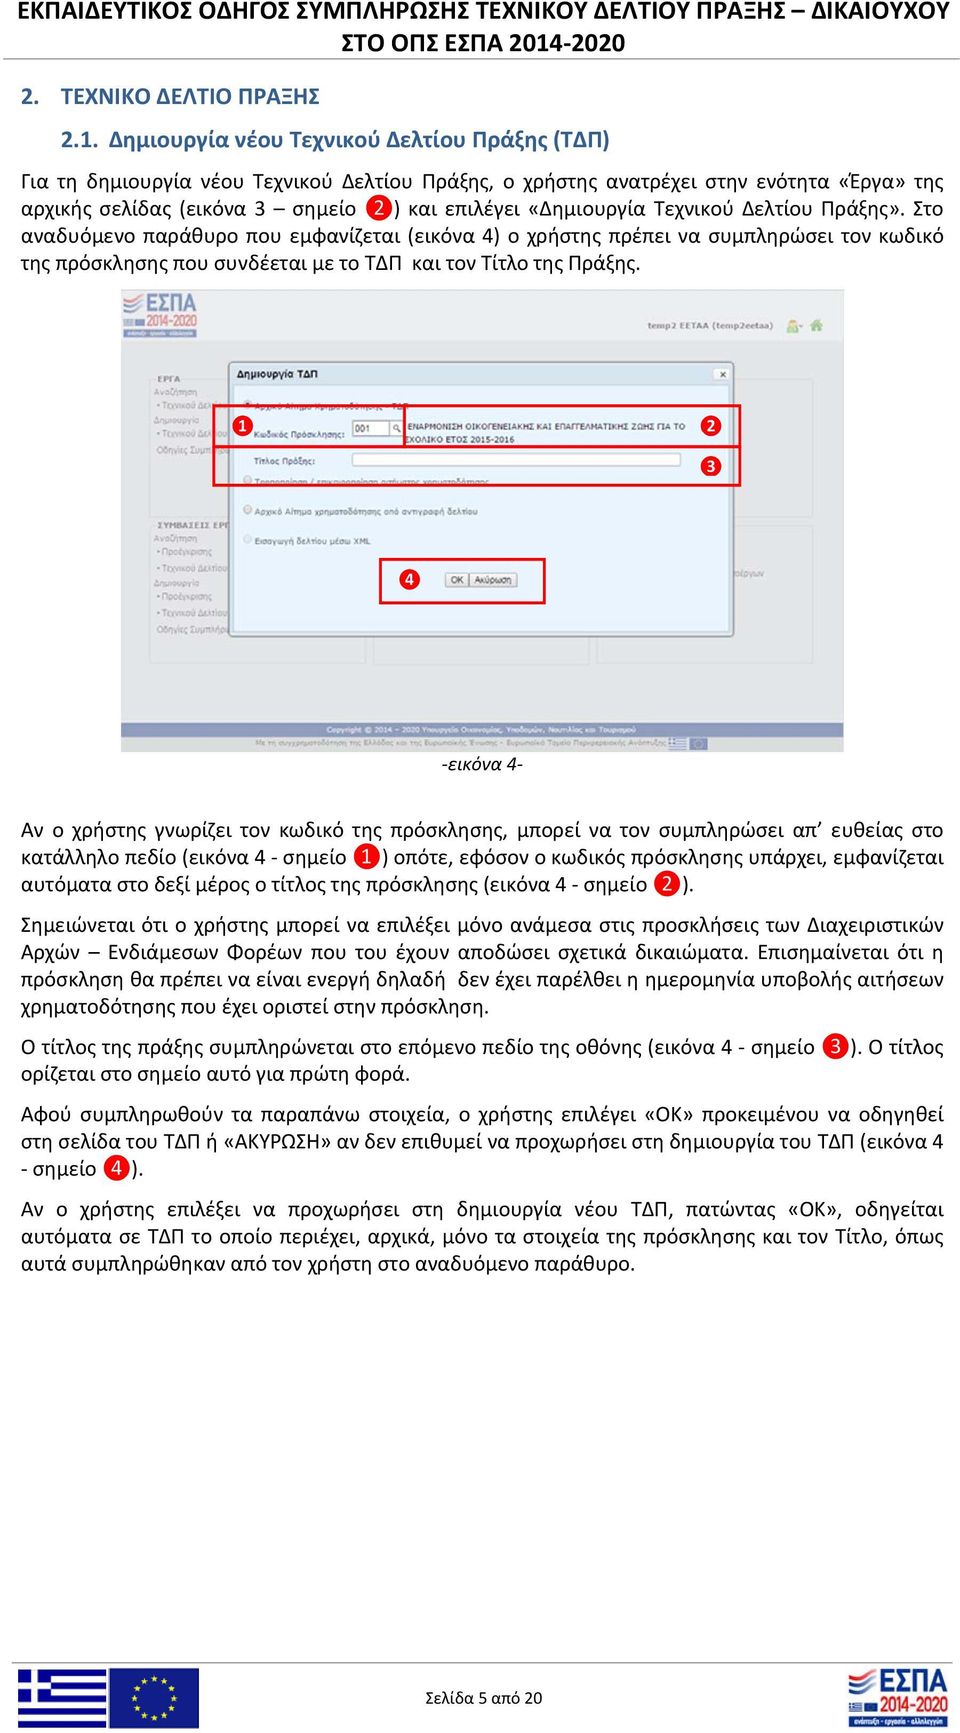 Τεχνικού Δελτίου Πράξης». Στο αναδυόμενο παράθυρο που εμφανίζεται (εικόνα 4) ο χρήστης πρέπει να συμπληρώσει τον κωδικό της πρόσκλησης που συνδέεται με το ΤΔΠ και τον Τίτλο της Πράξης.